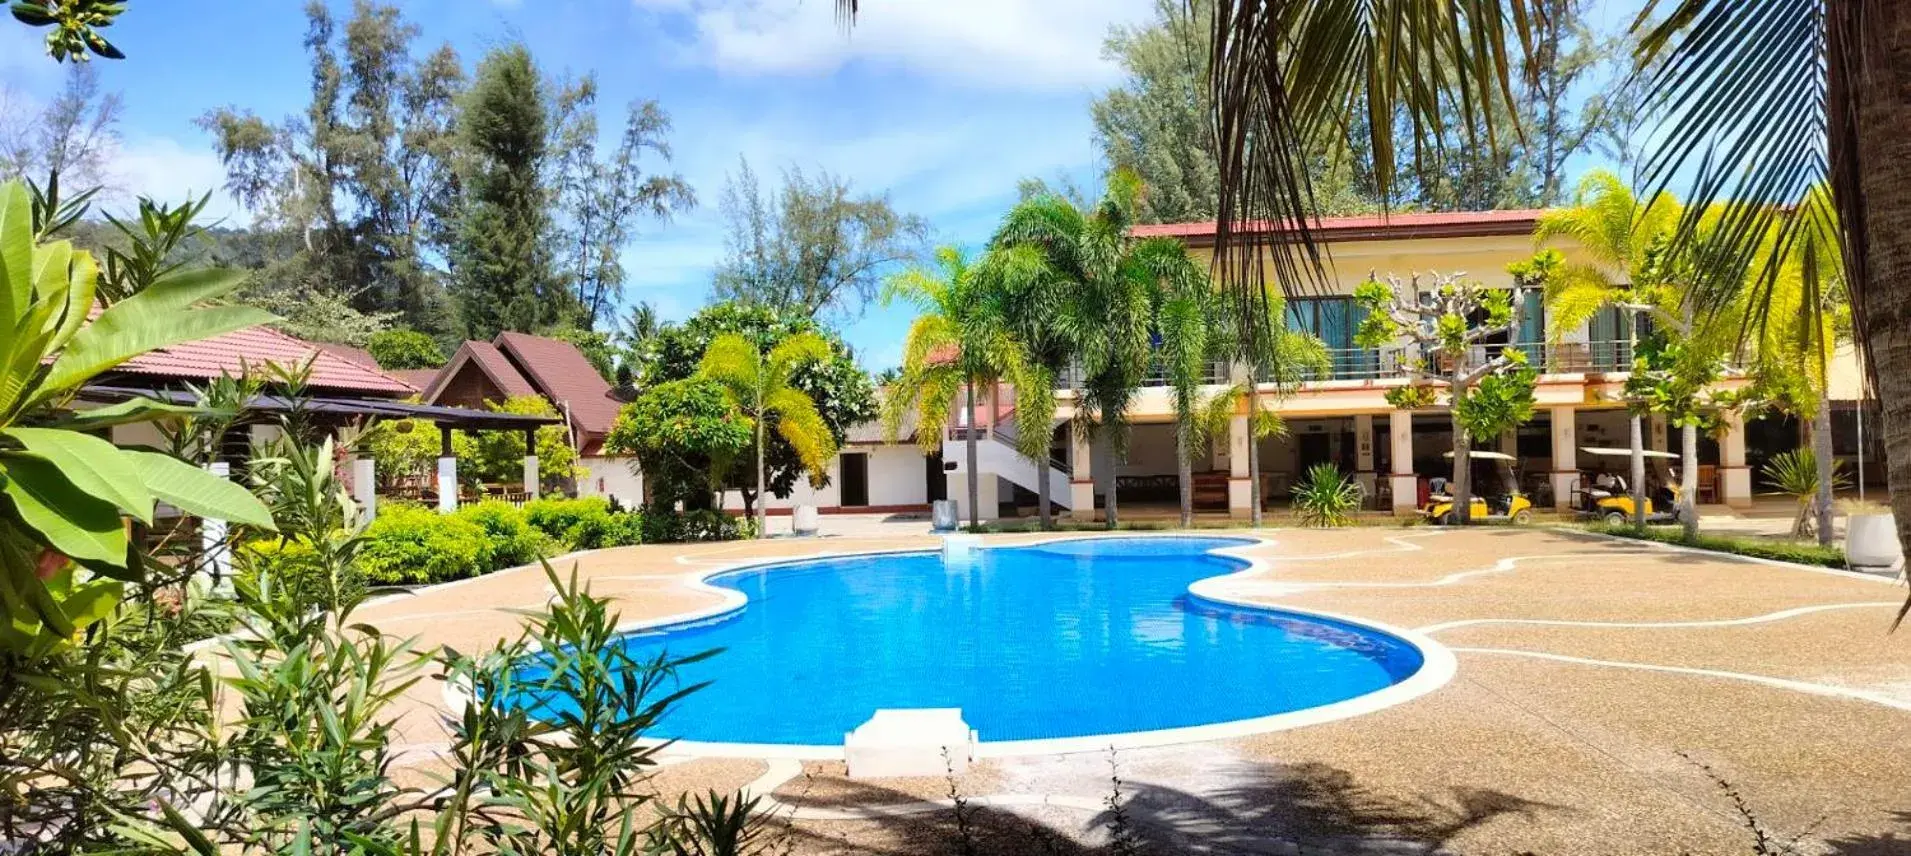 Pool view, Swimming Pool in D.R. Lanta Bay Resort